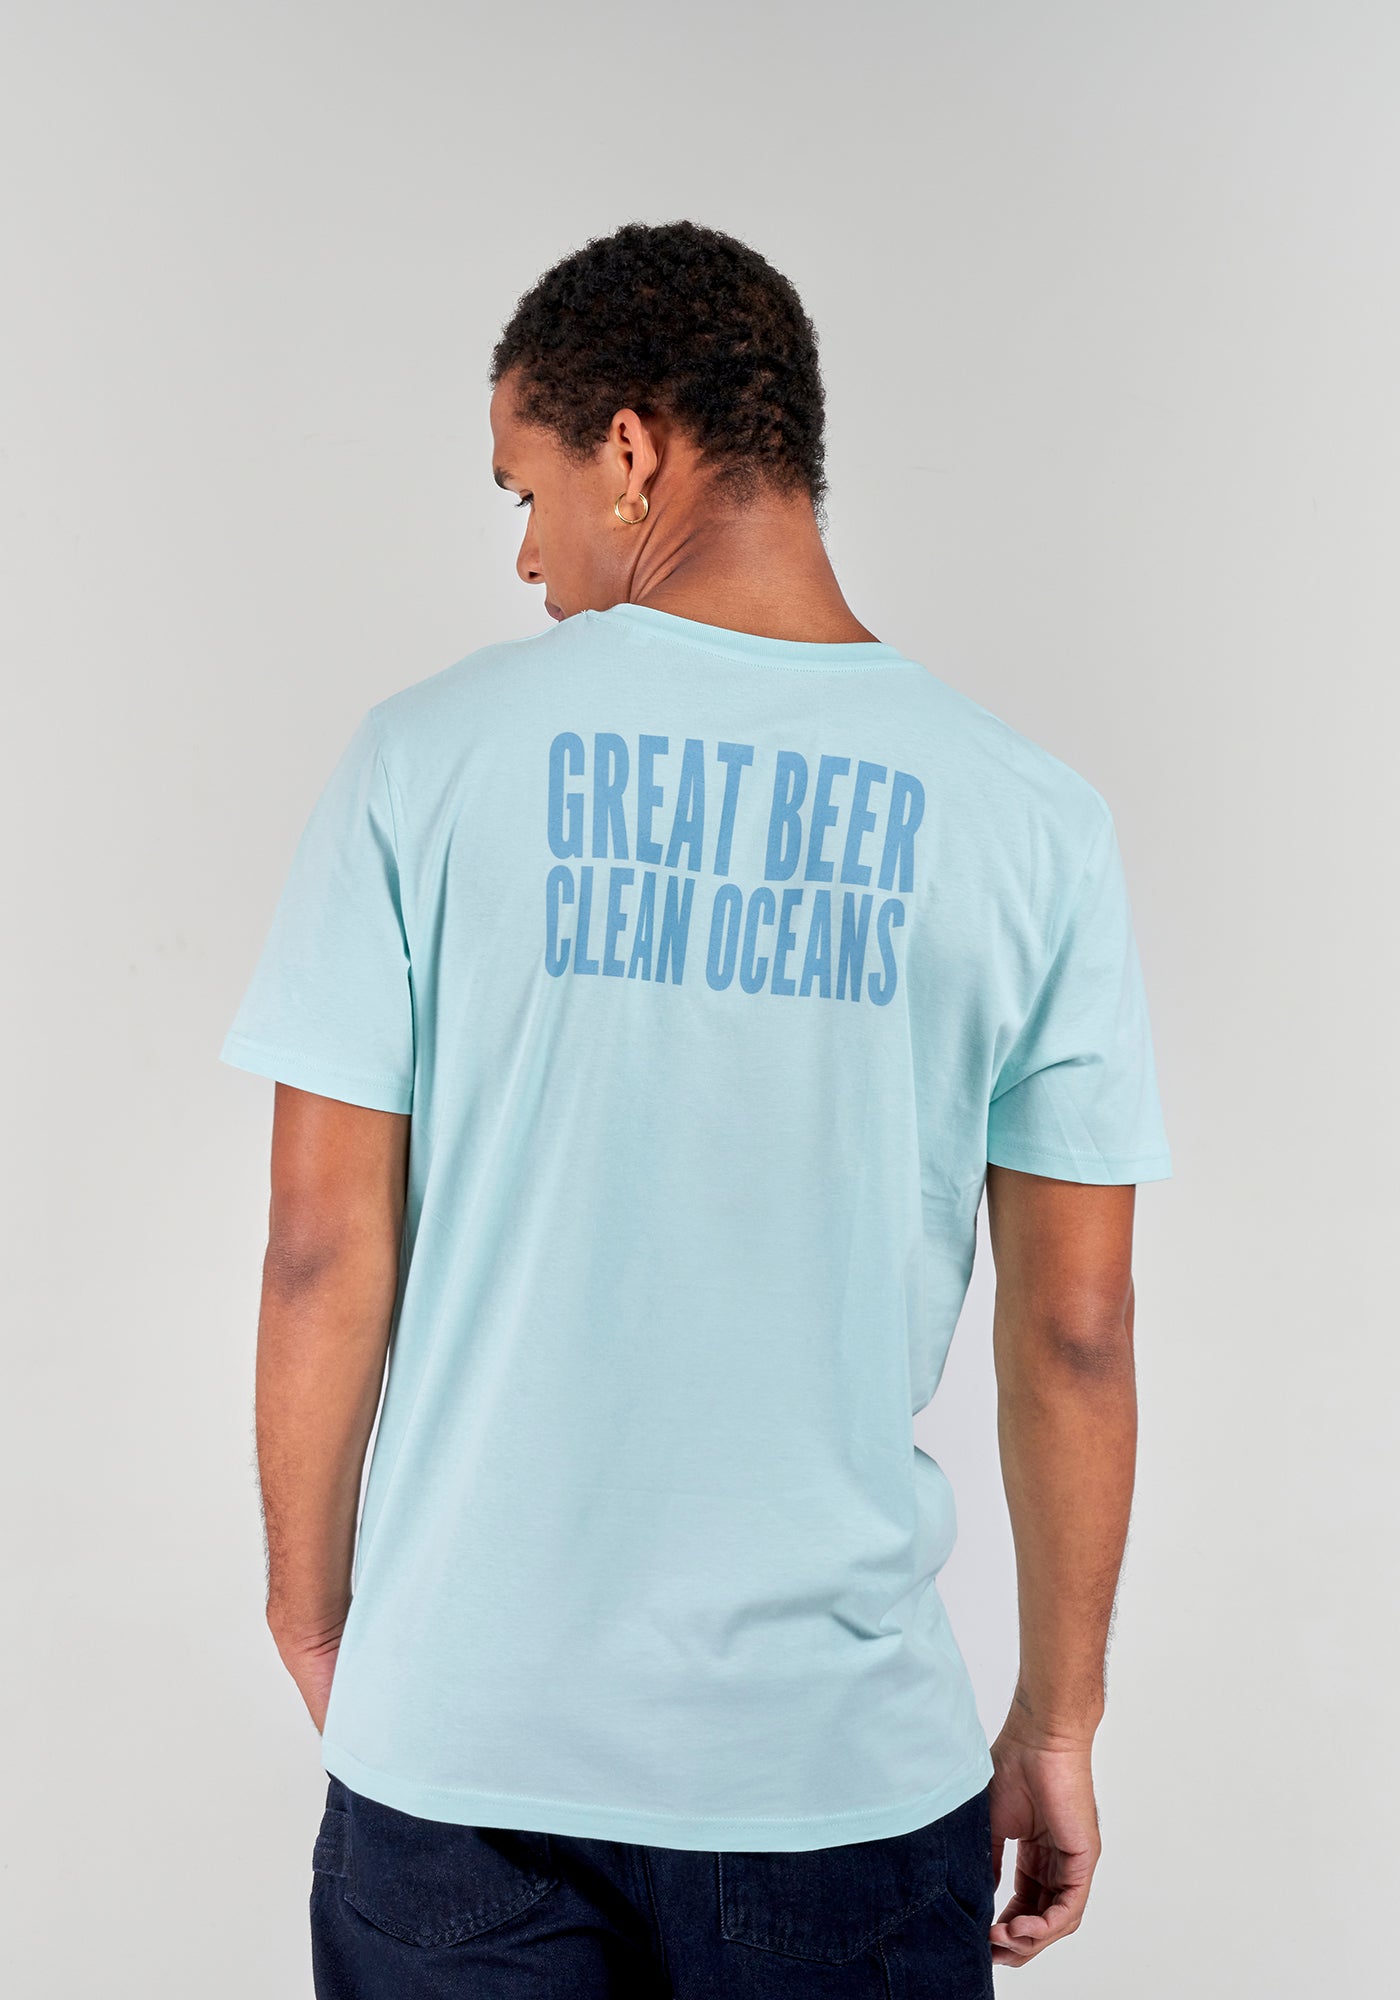 Great Beer, Clean Oceans T-Shirt